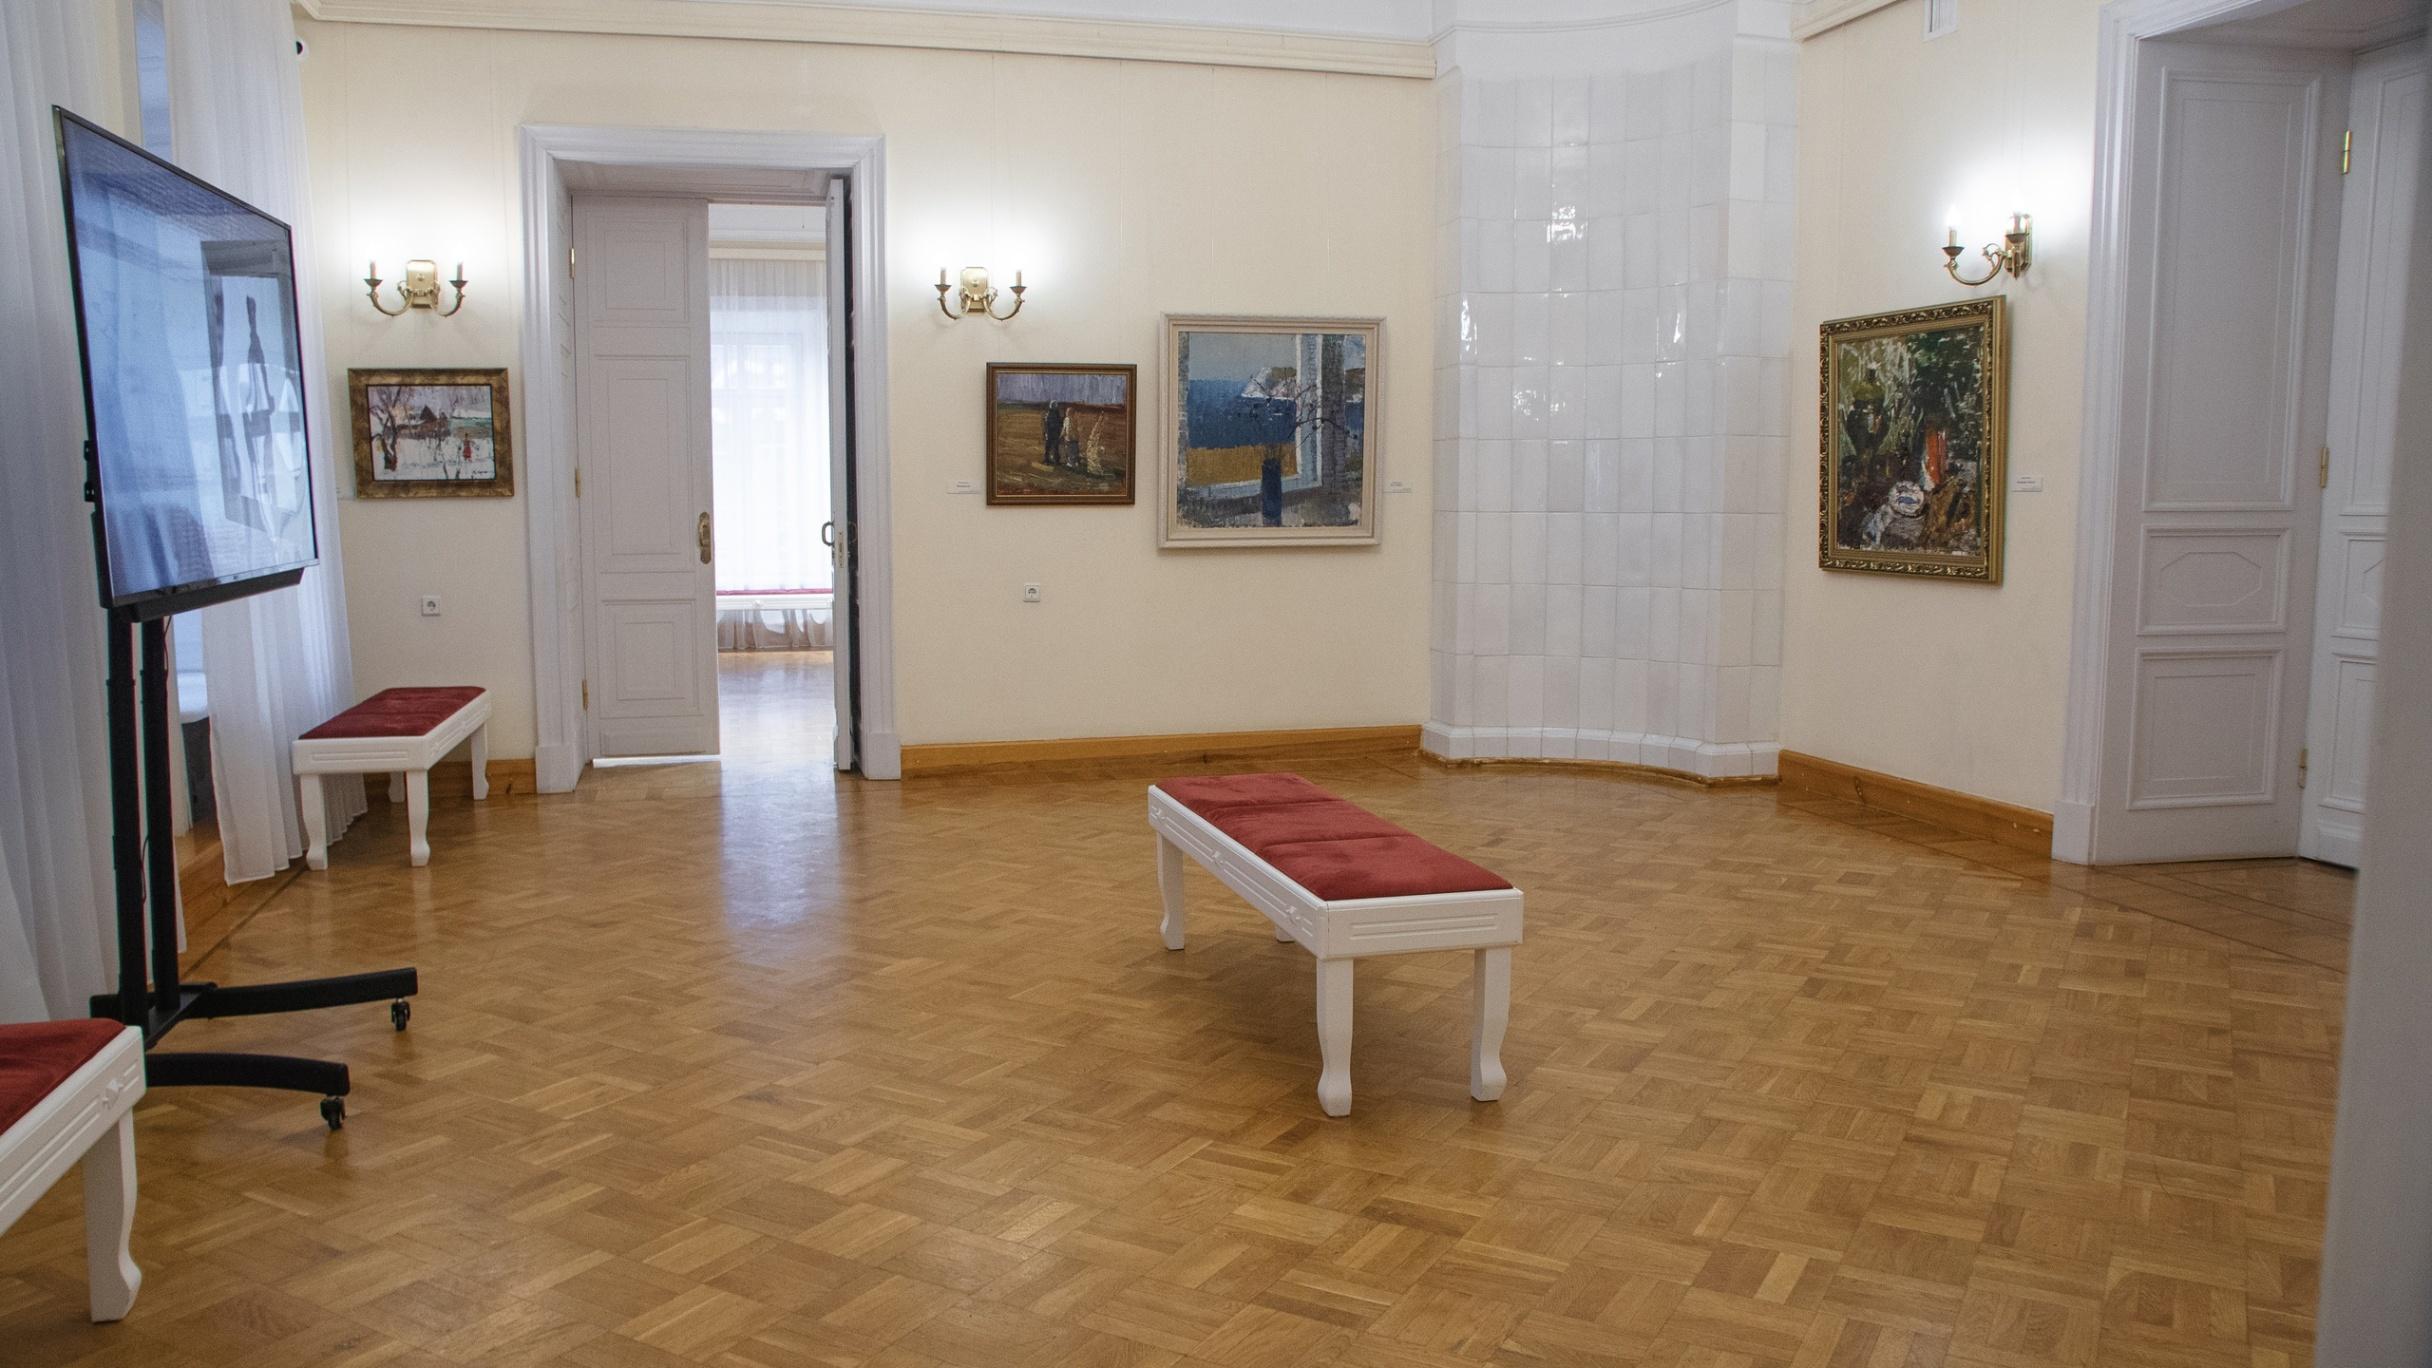 Липецкий музейно-выставочный центр, афиша на 6 июля – афиша